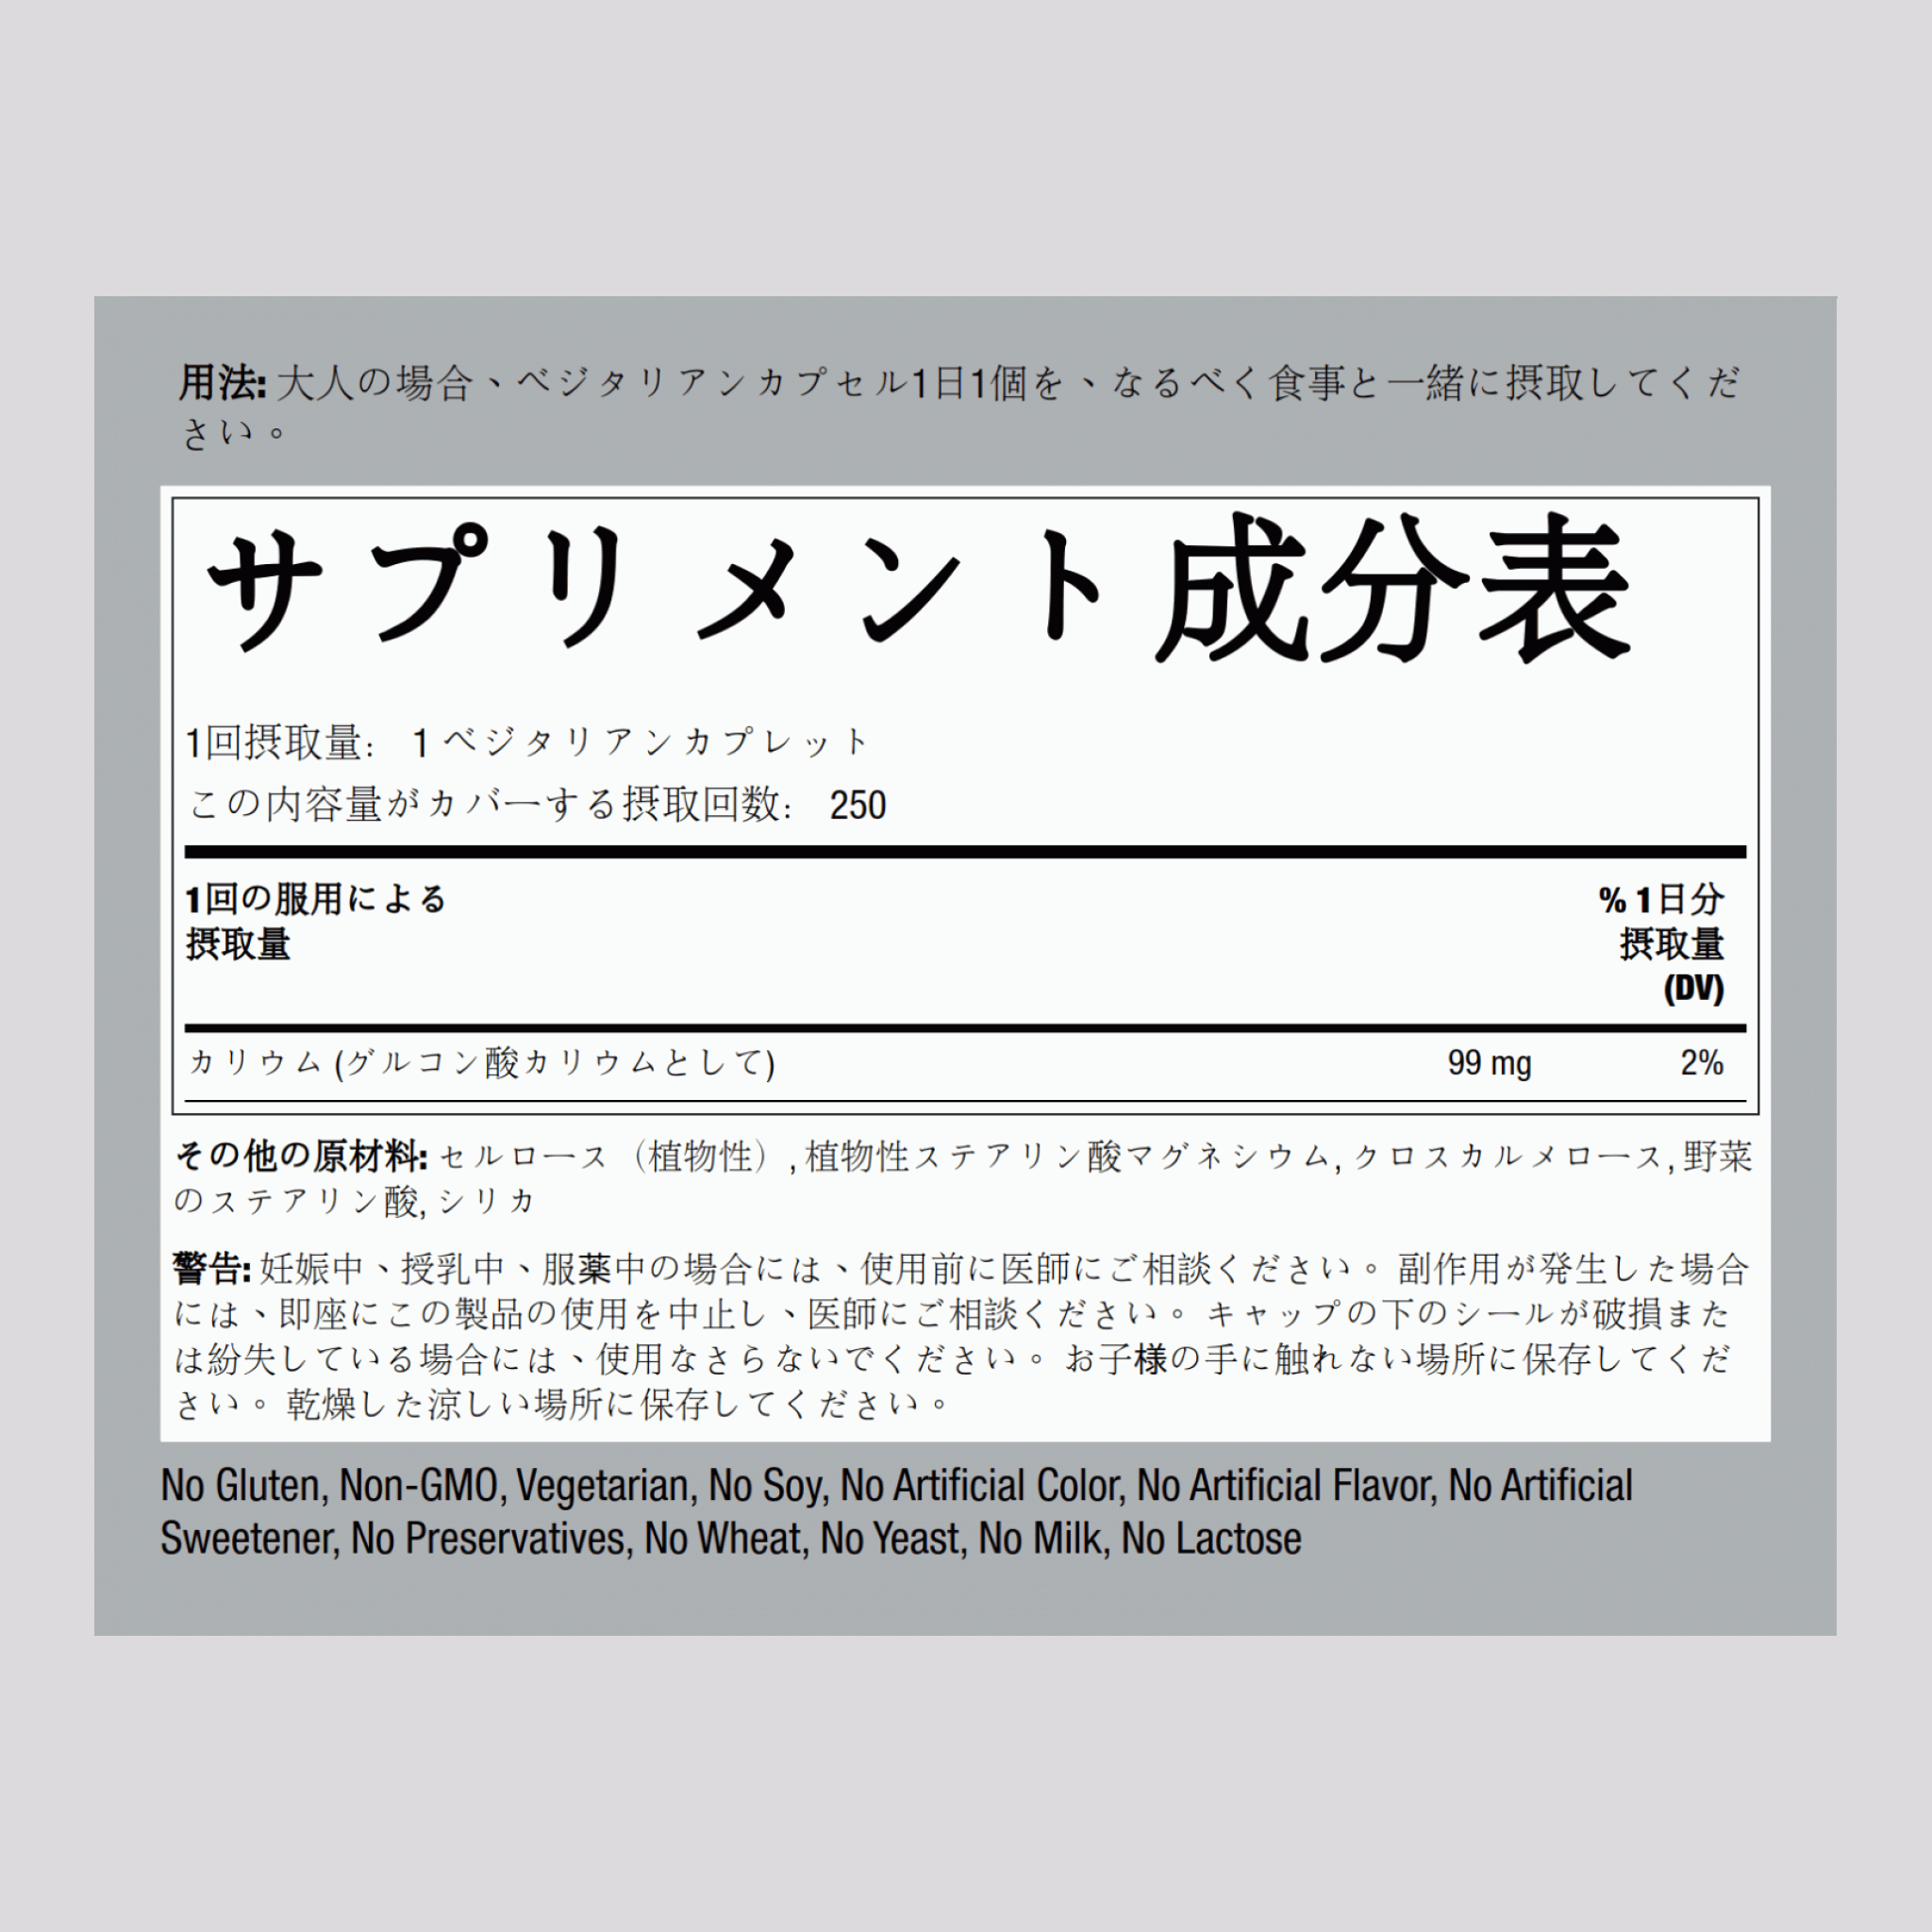 キレート カリウム (グルコン酸塩),99 mg 250 カプレット     